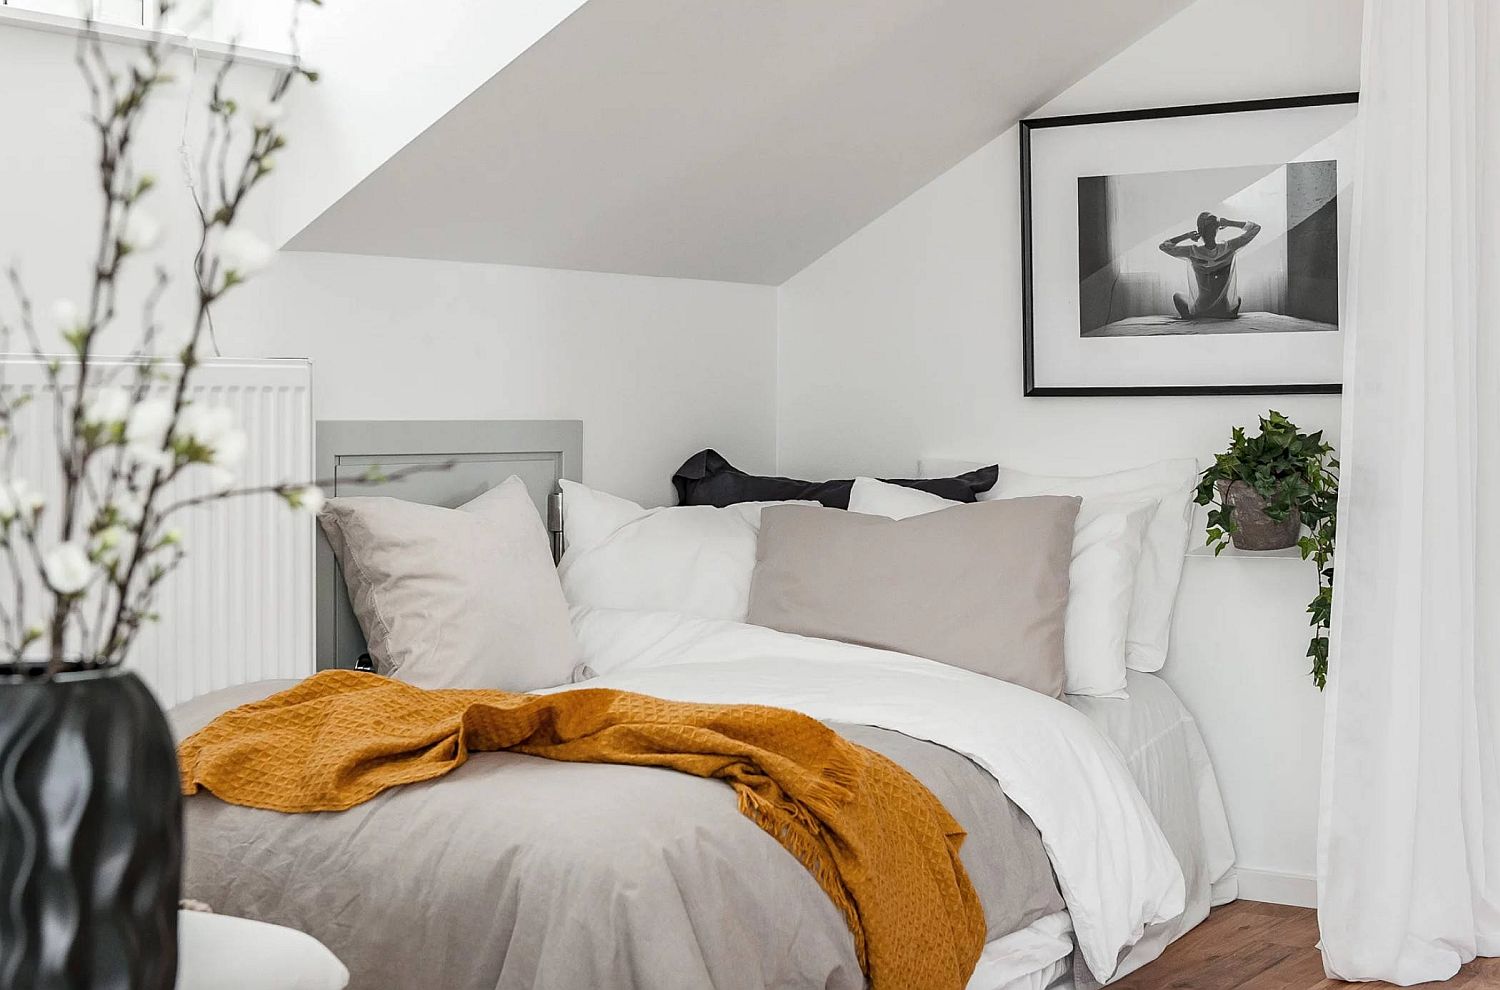 Hình ảnh phòng ngủ với giường nệm màu trắng đặt sát vào góc phòng, rèm cửa màu trắng phân tách với khu vực bên ngoài, chăn mỏng màu vàng tạo điểm nhấn